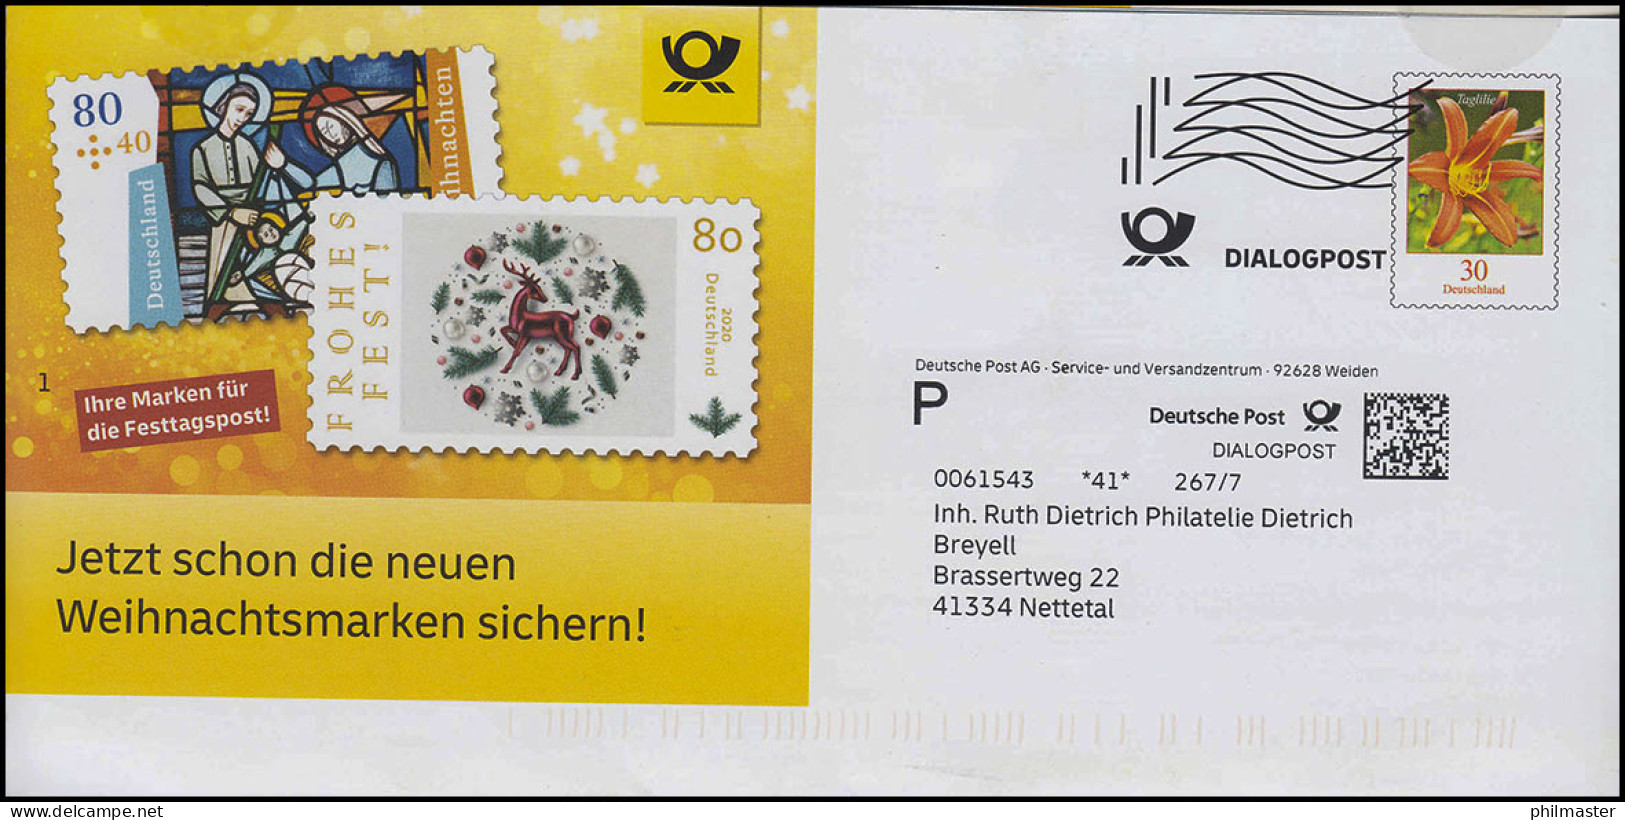 Plusbrief Dialogpost Blume Taglilie 30 Cent: Neue Weihnachtsmarken 2020 - Enveloppes - Neuves